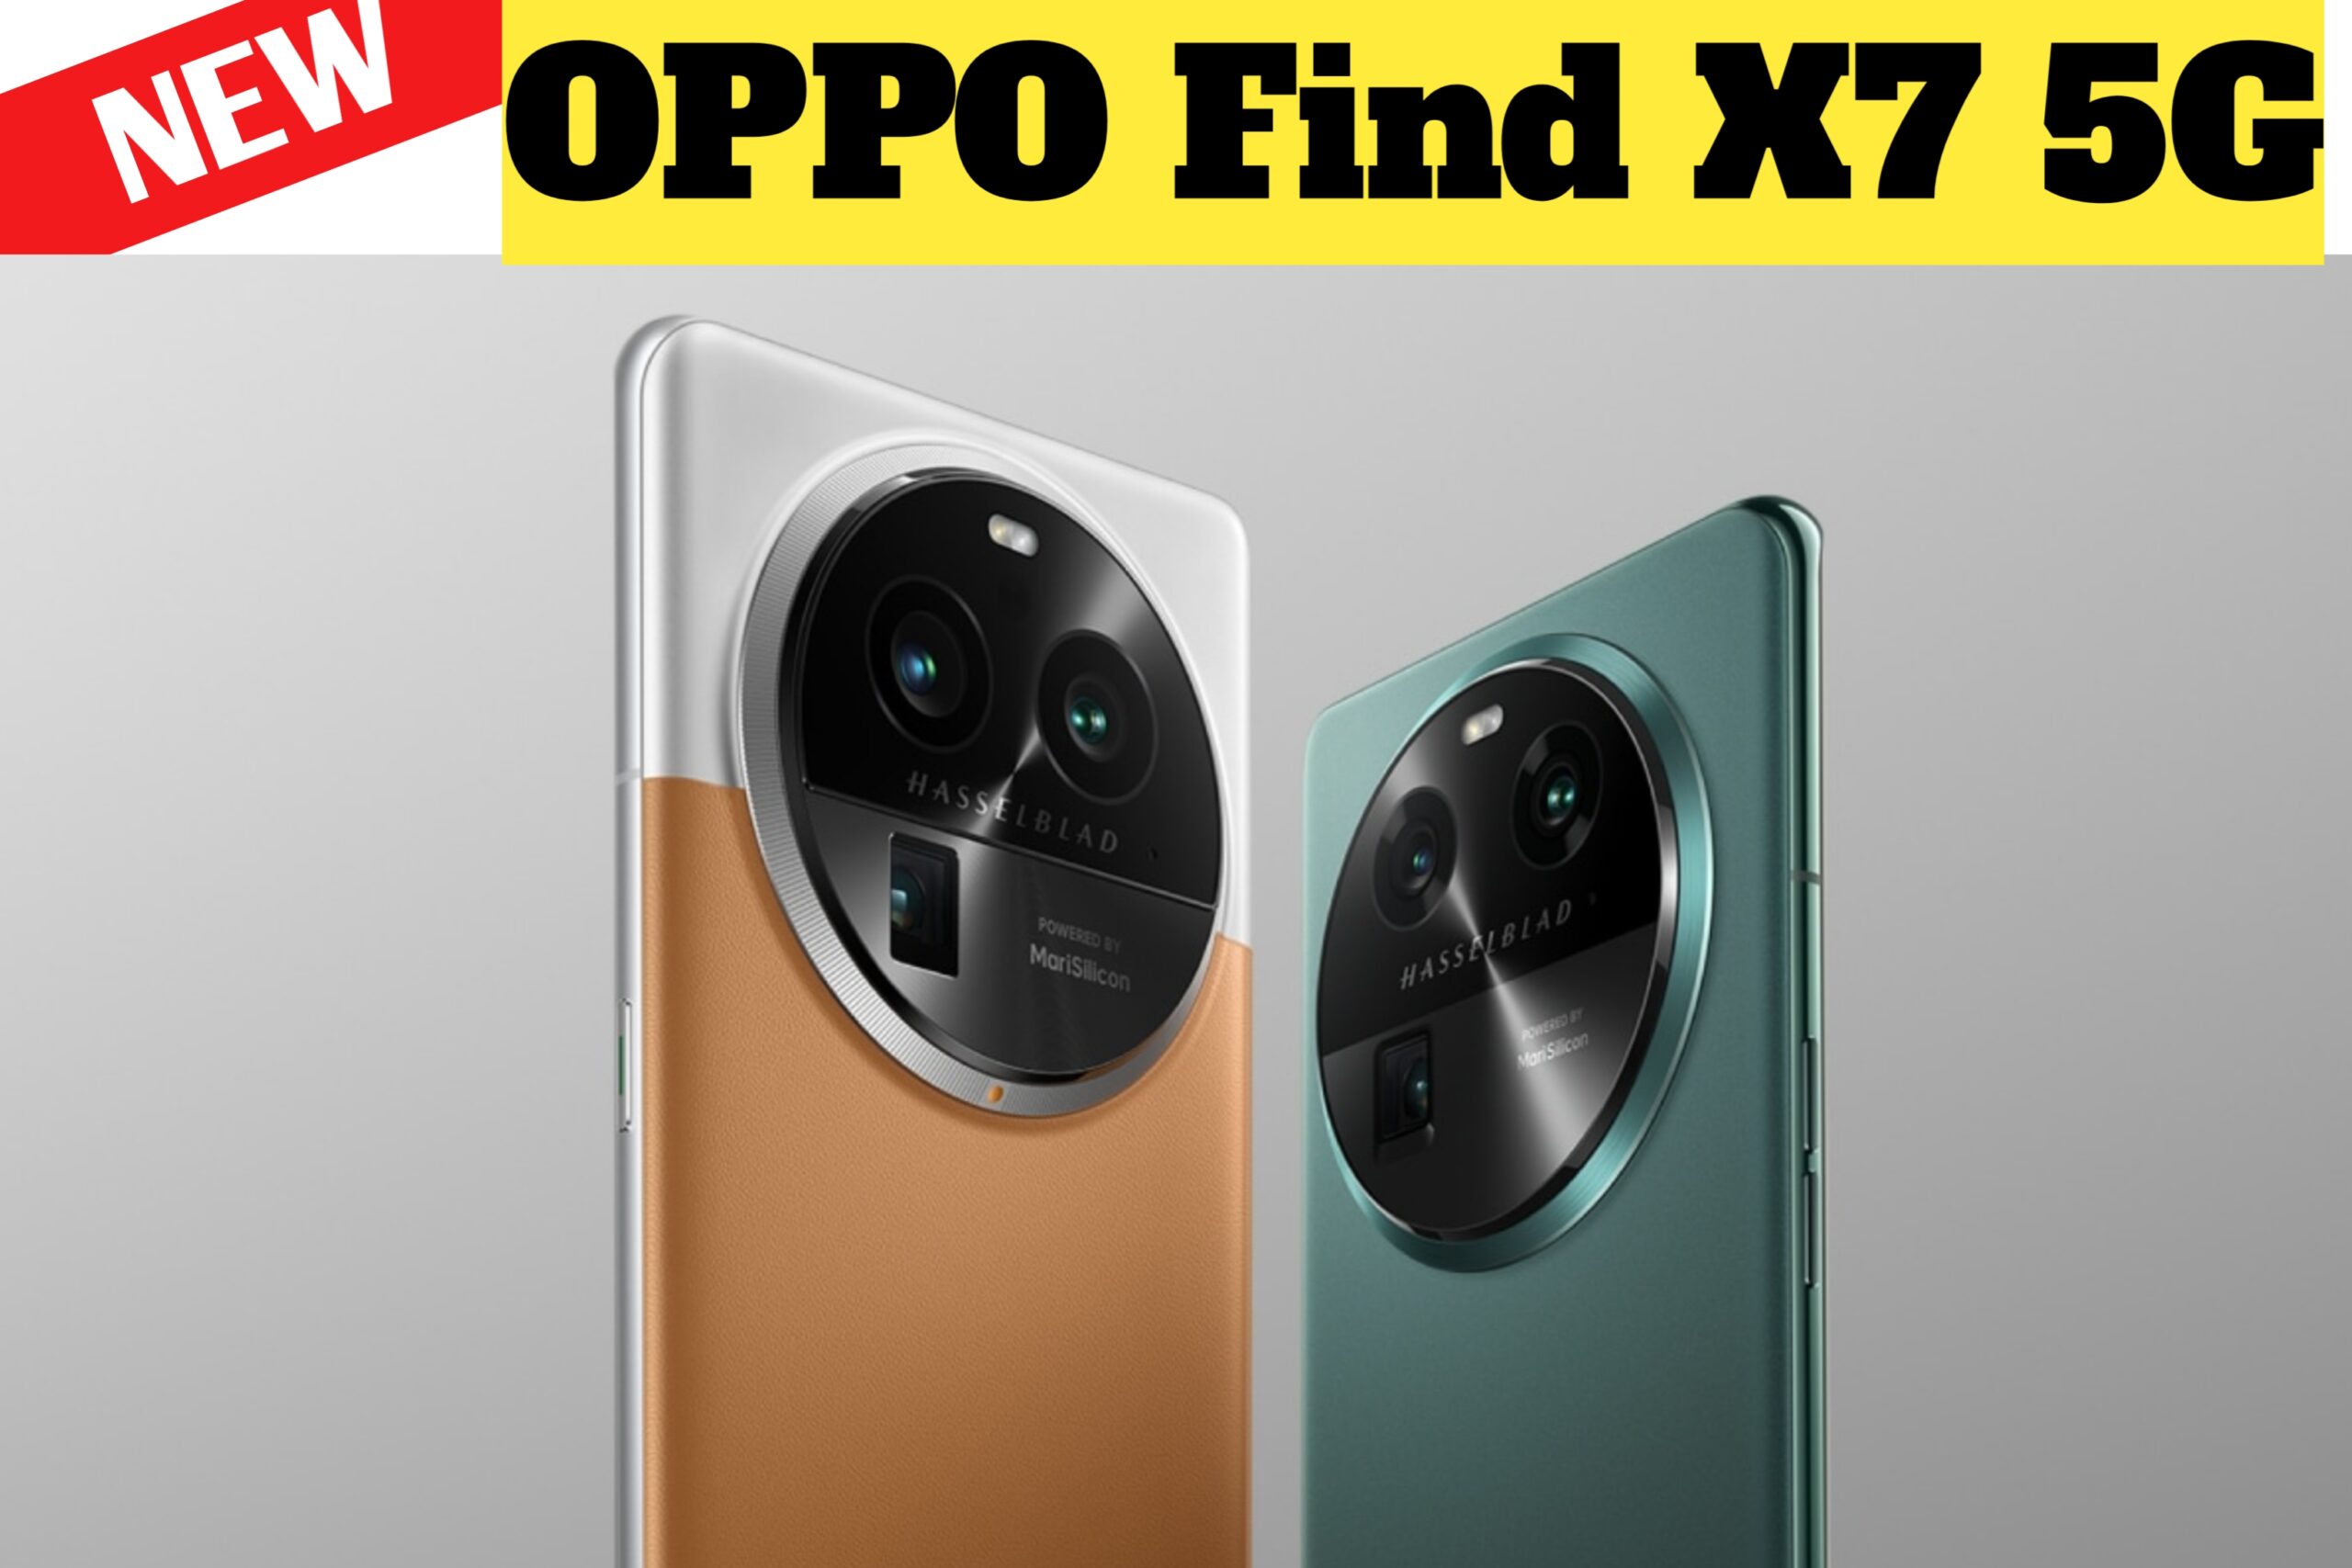 OPPO Find X7